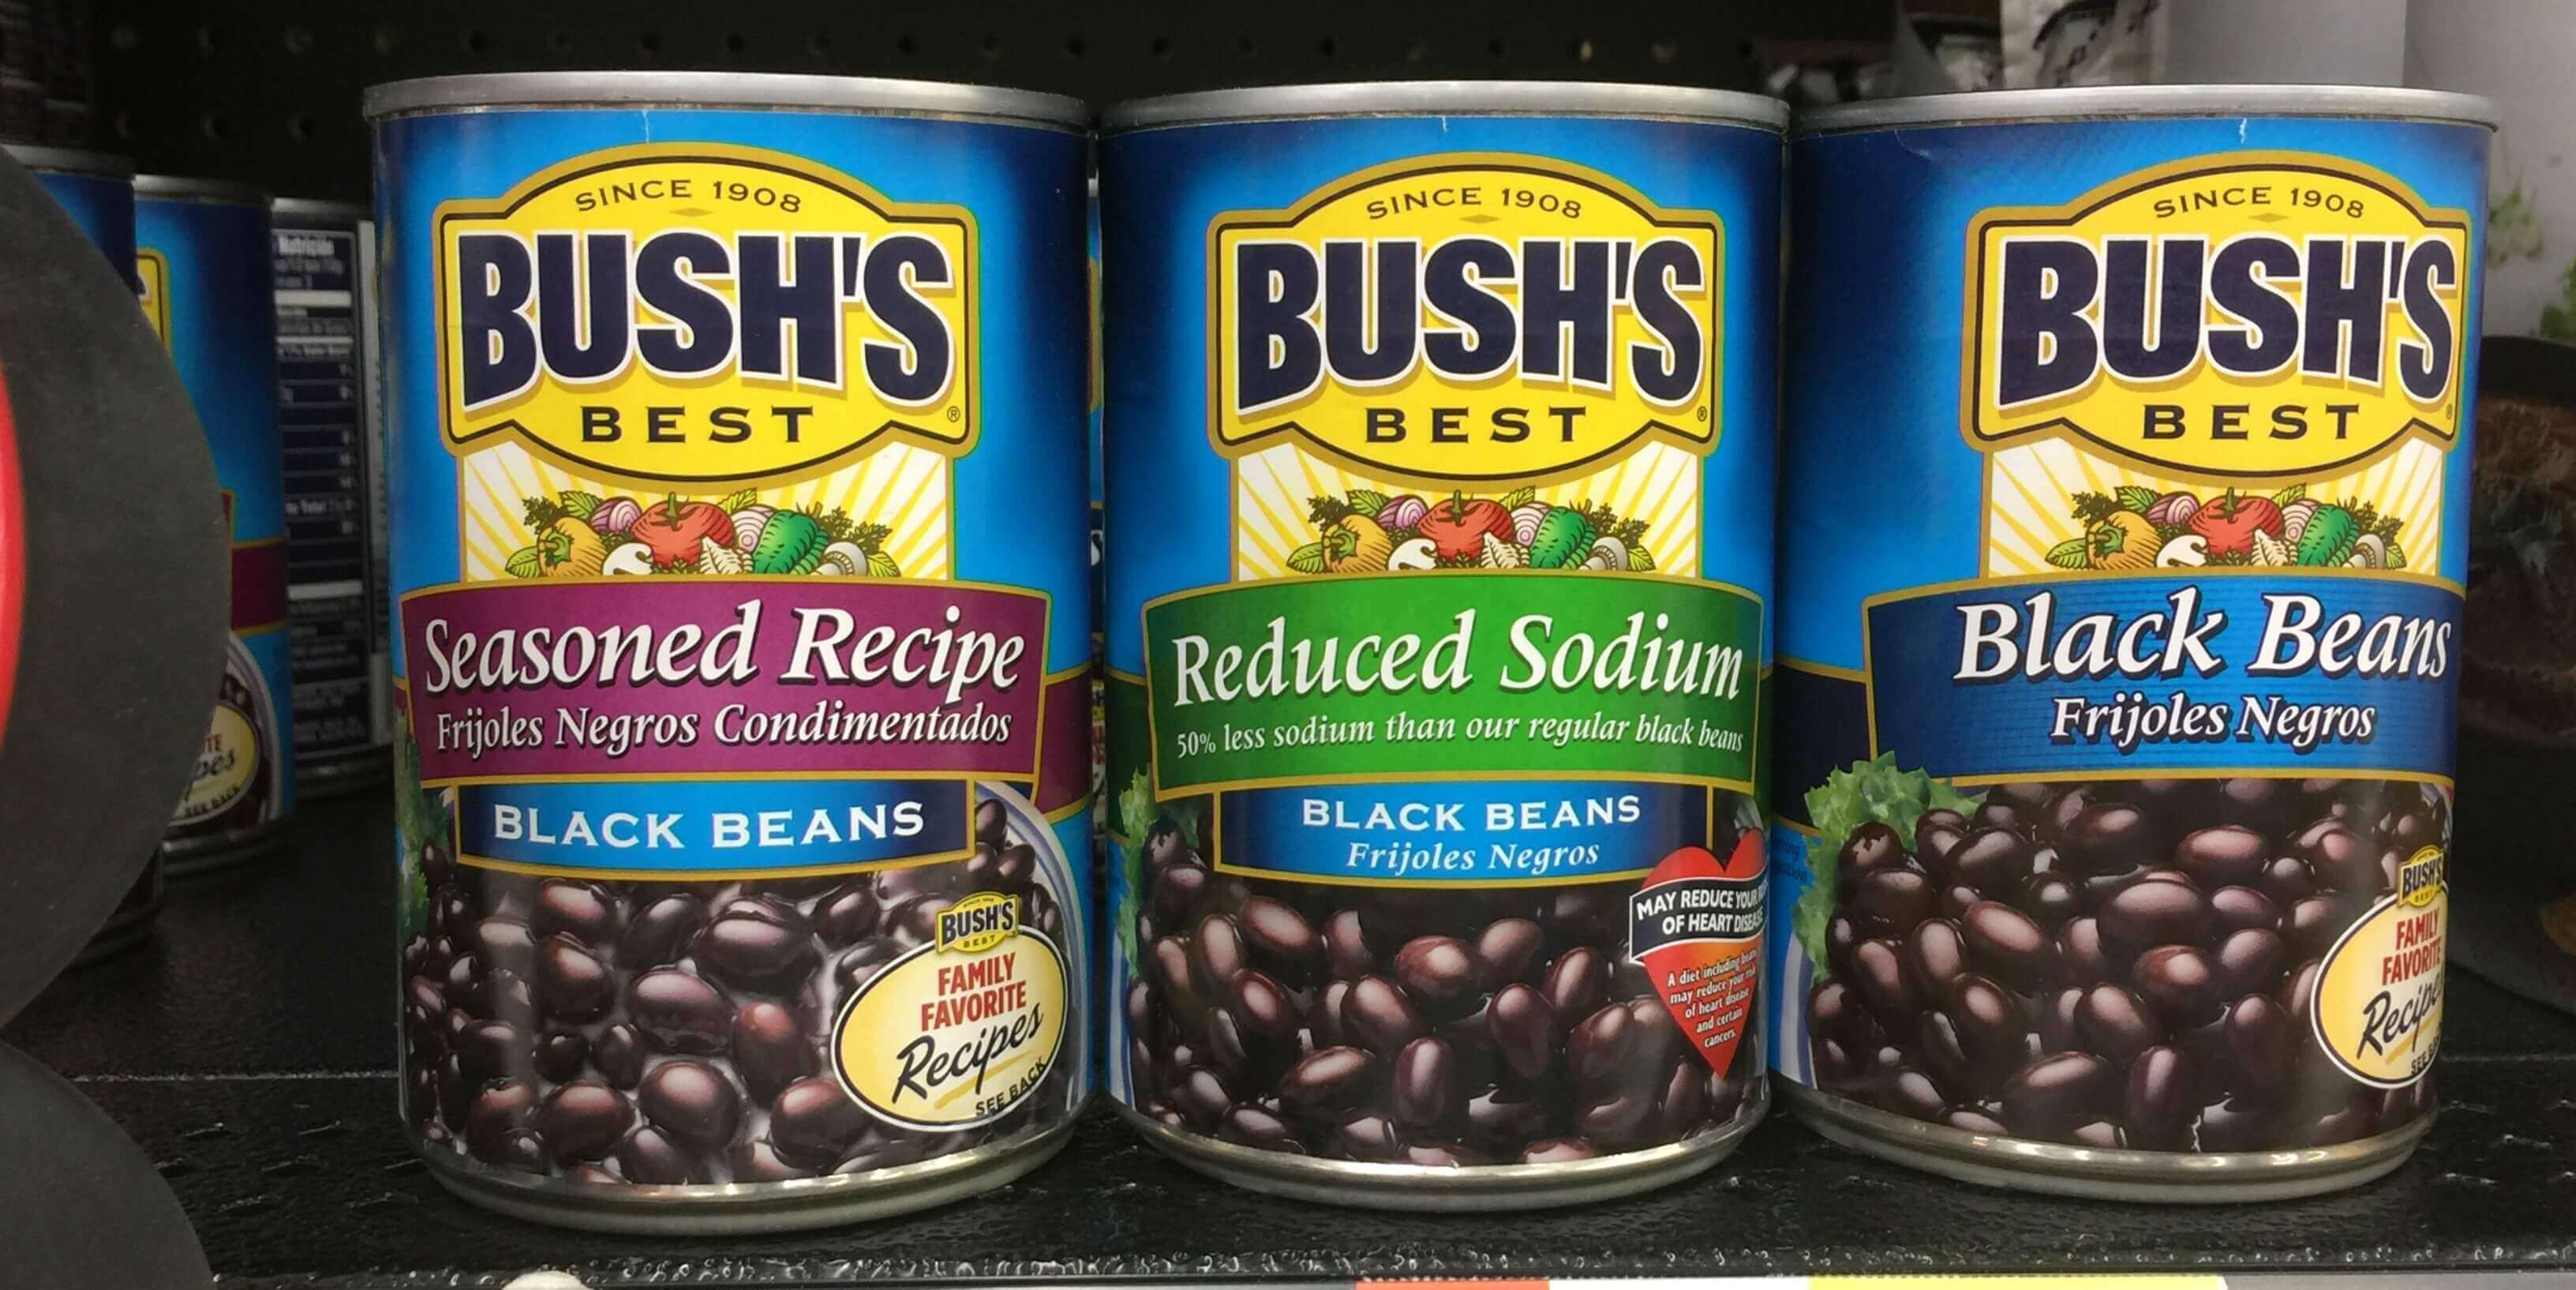 Rare $1/1 Bush’s Beans Coupon = FREE at ShopRite, Target, Walmart ...